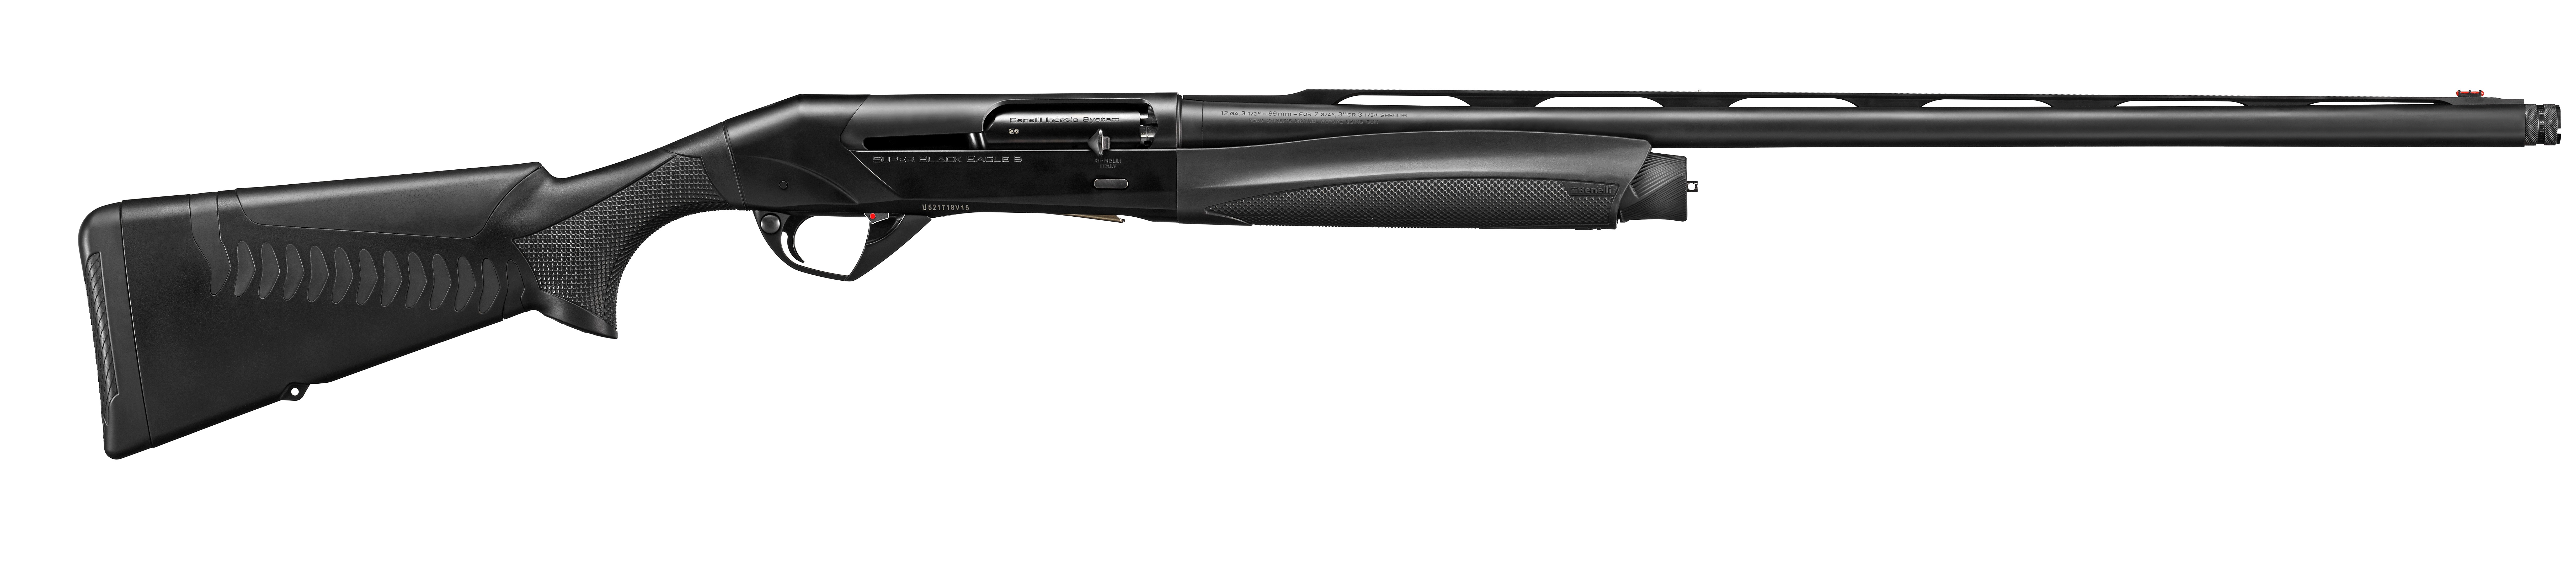 Гладкоствольное ружье BENELLI Moд. BLACK EAGLE 3 BLACK COMFORTECH-3 CRIO (полуавтоматическое)